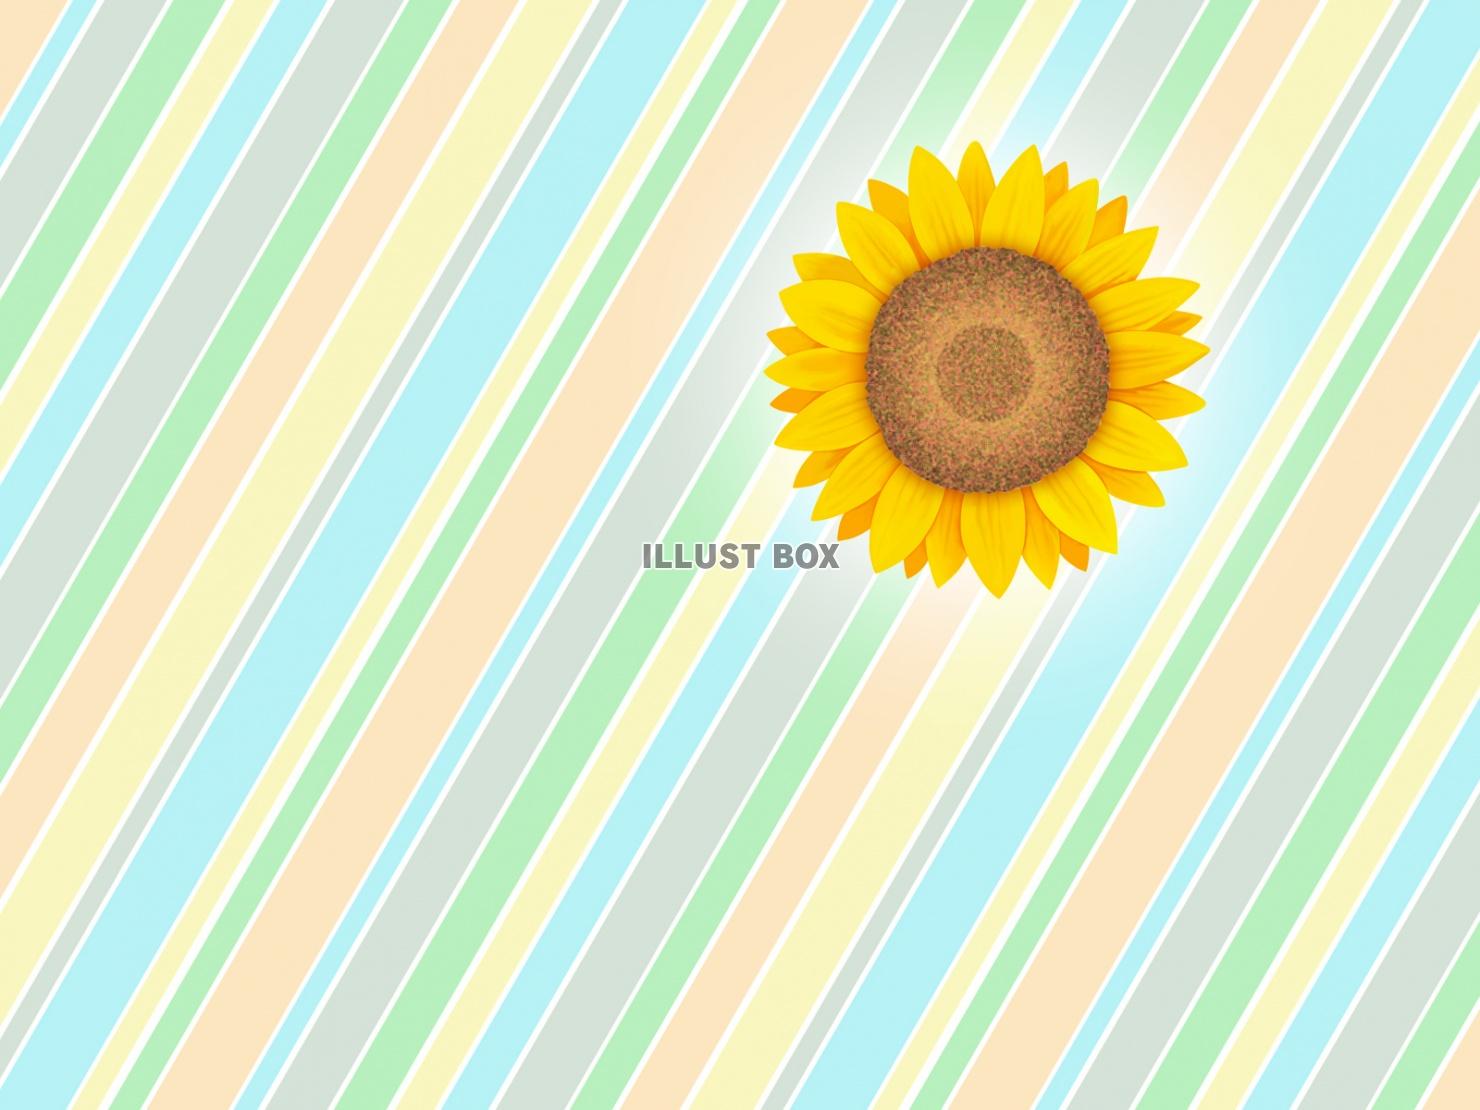 向日葵の花柄と縞模様の壁紙シンプル背景素材イラスト